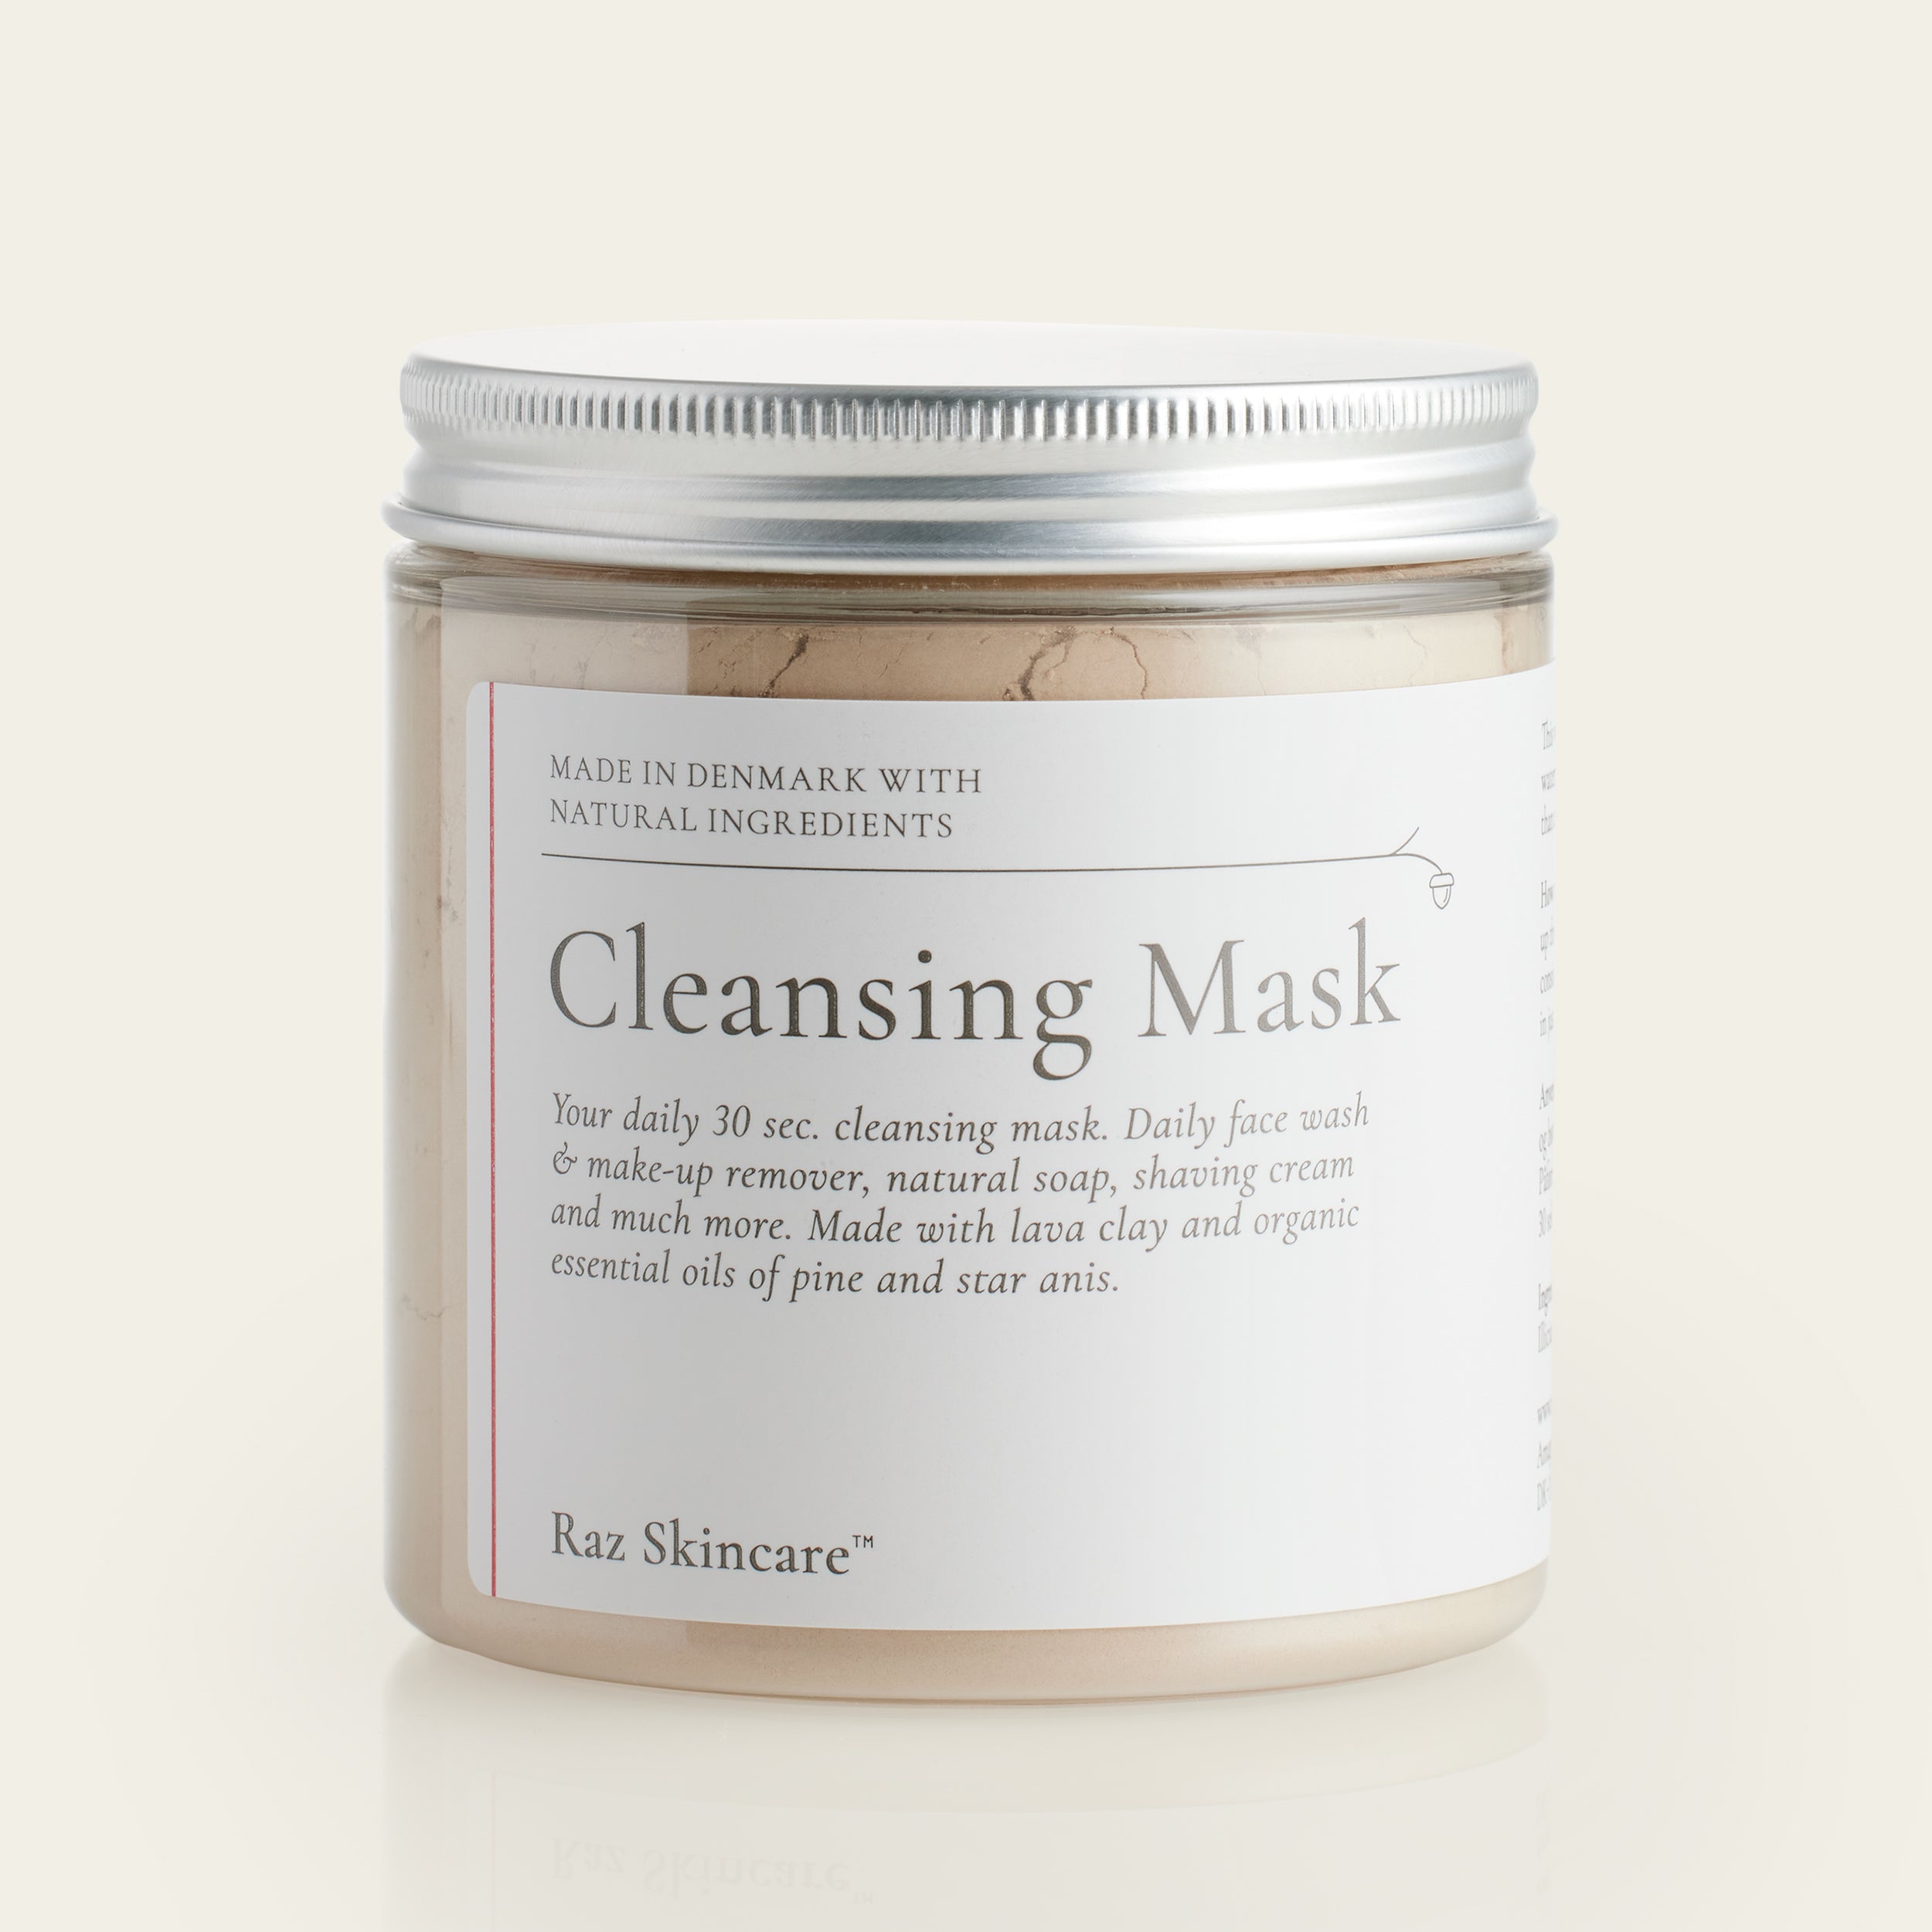 Opdag Raz Skincares Cleansing Mask 200g - En effektiv lermaske, som skånsomt renser samt detoxer din hud. Kan også bruges som daglig ansigtsvask - blot 30 sekunder morgen og aften.